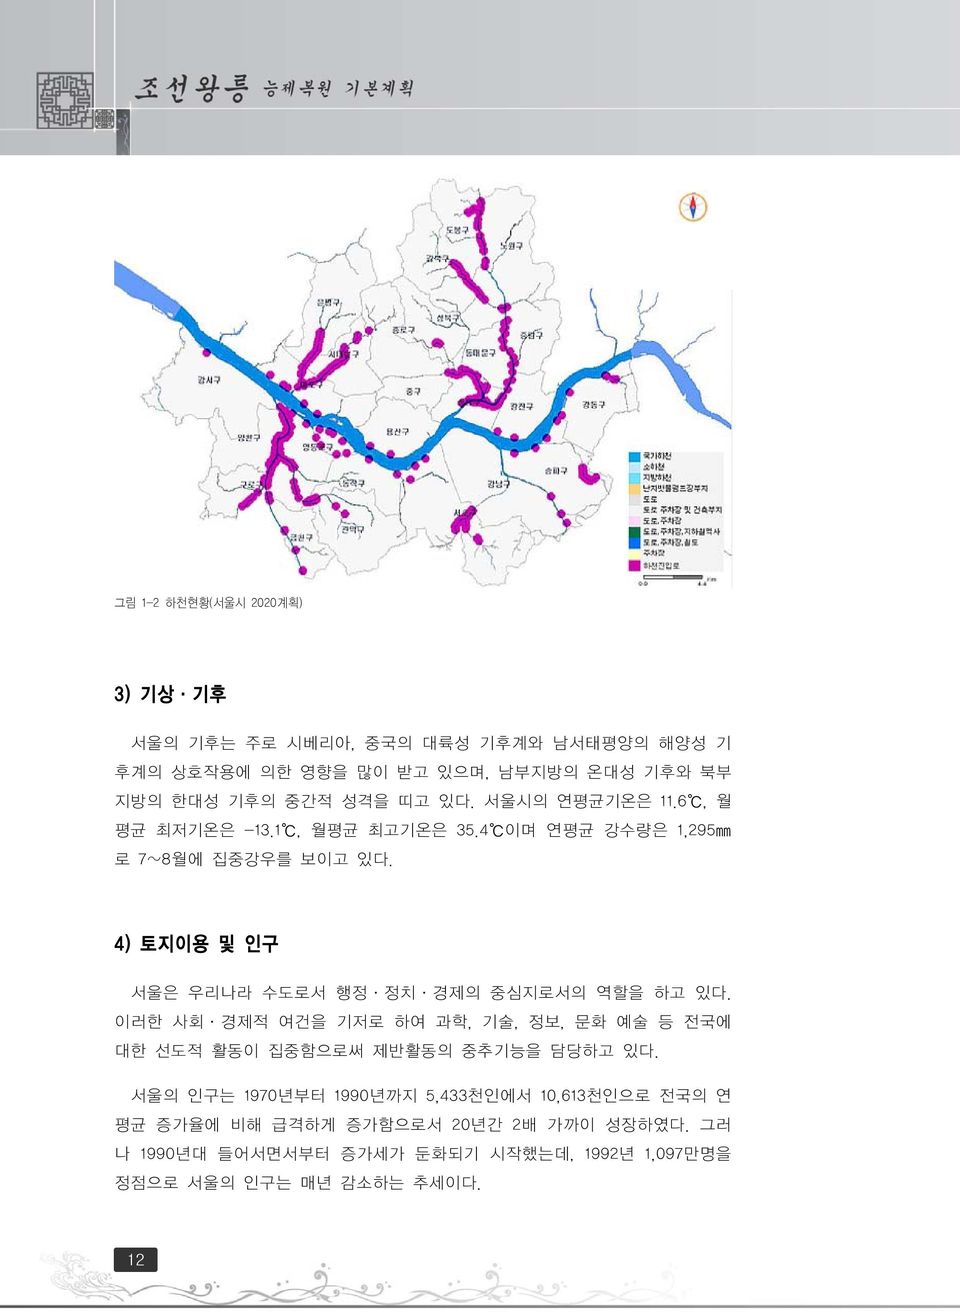 4) 토지이용 및 인구 서울은 우리나라 수도로서 행정ㆍ정치ㆍ경제의 중심지로서의 역할을 하고 있다. 이러한 사회ㆍ경제적 여건을 기저로 하여 과학, 기술, 정보, 문화 예술 등 전국에 대한 선도적 활동이 집중함으로써 제반활동의 중추기능을 담당하고 있다.